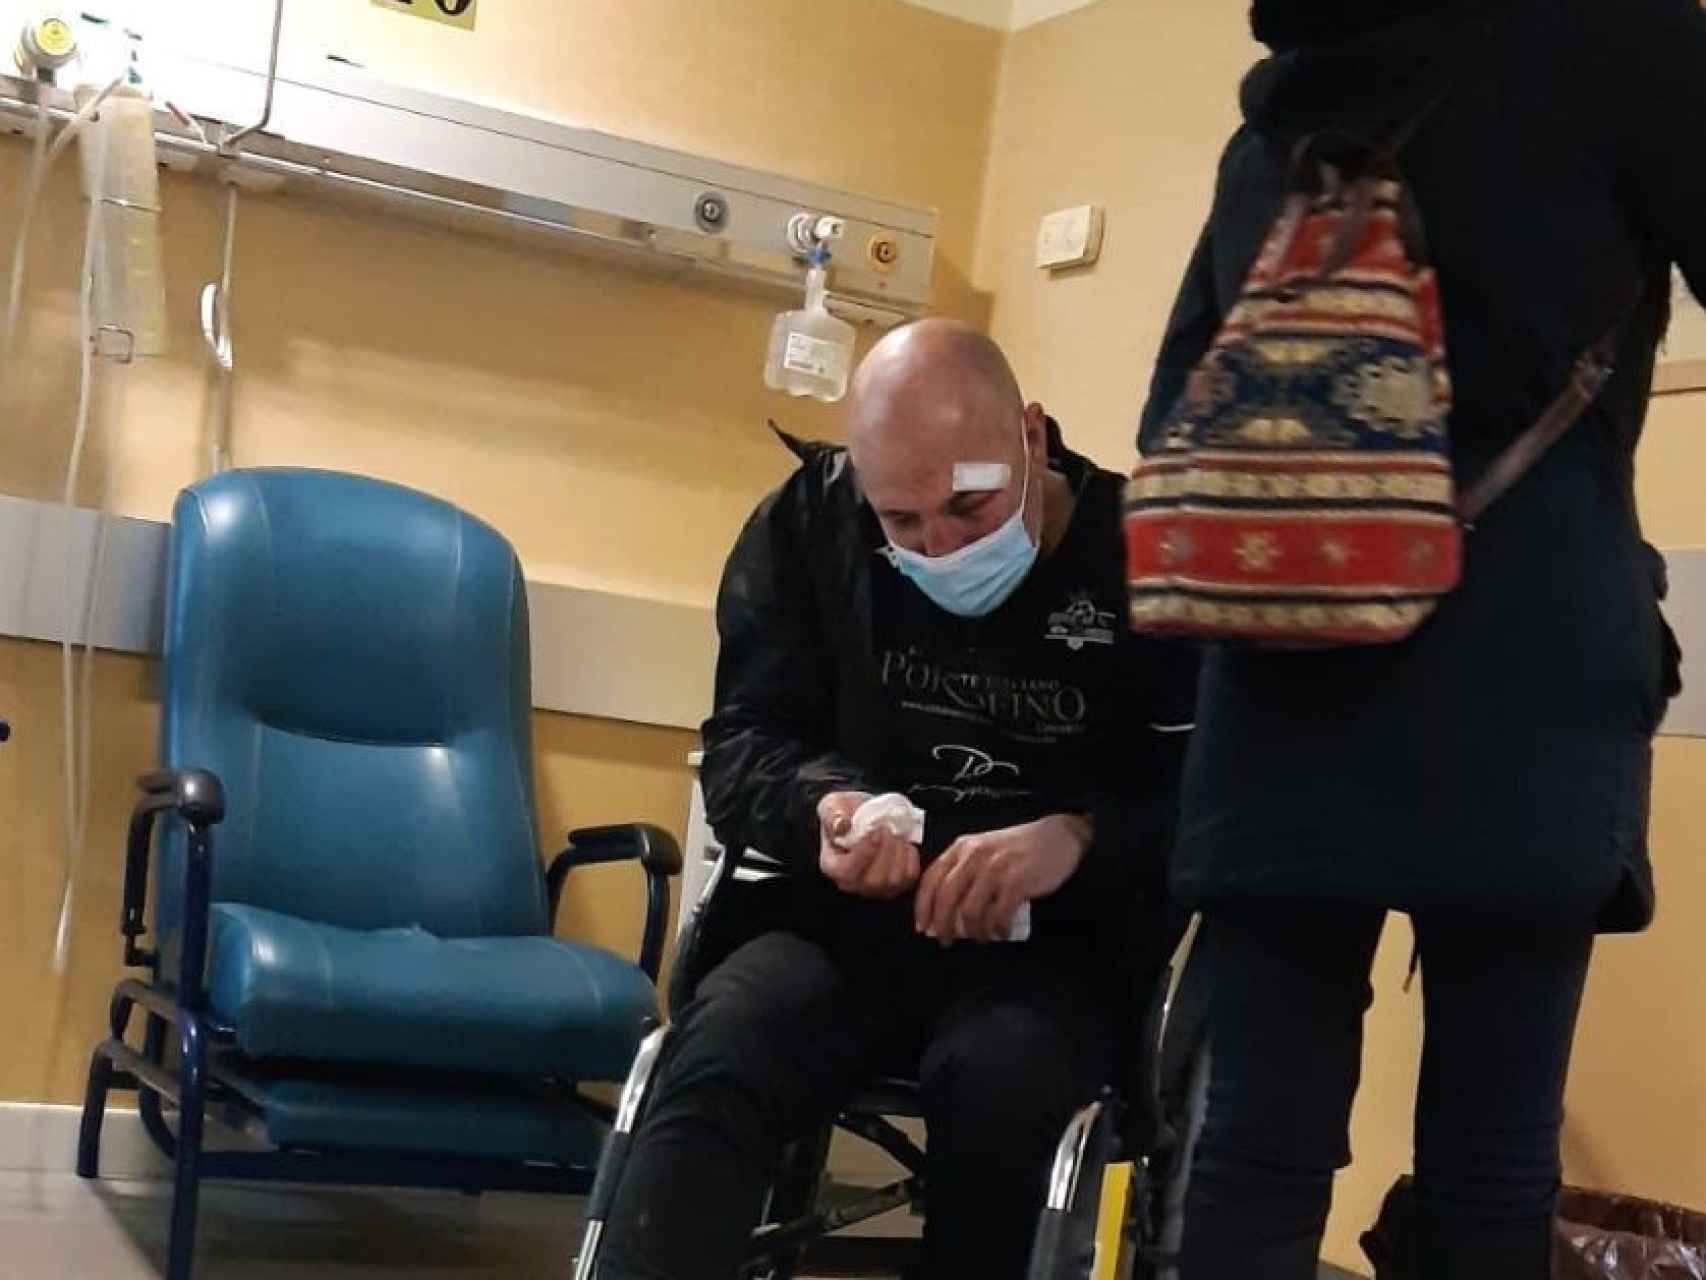 Carlos hospitalizado tras ser apaleado.